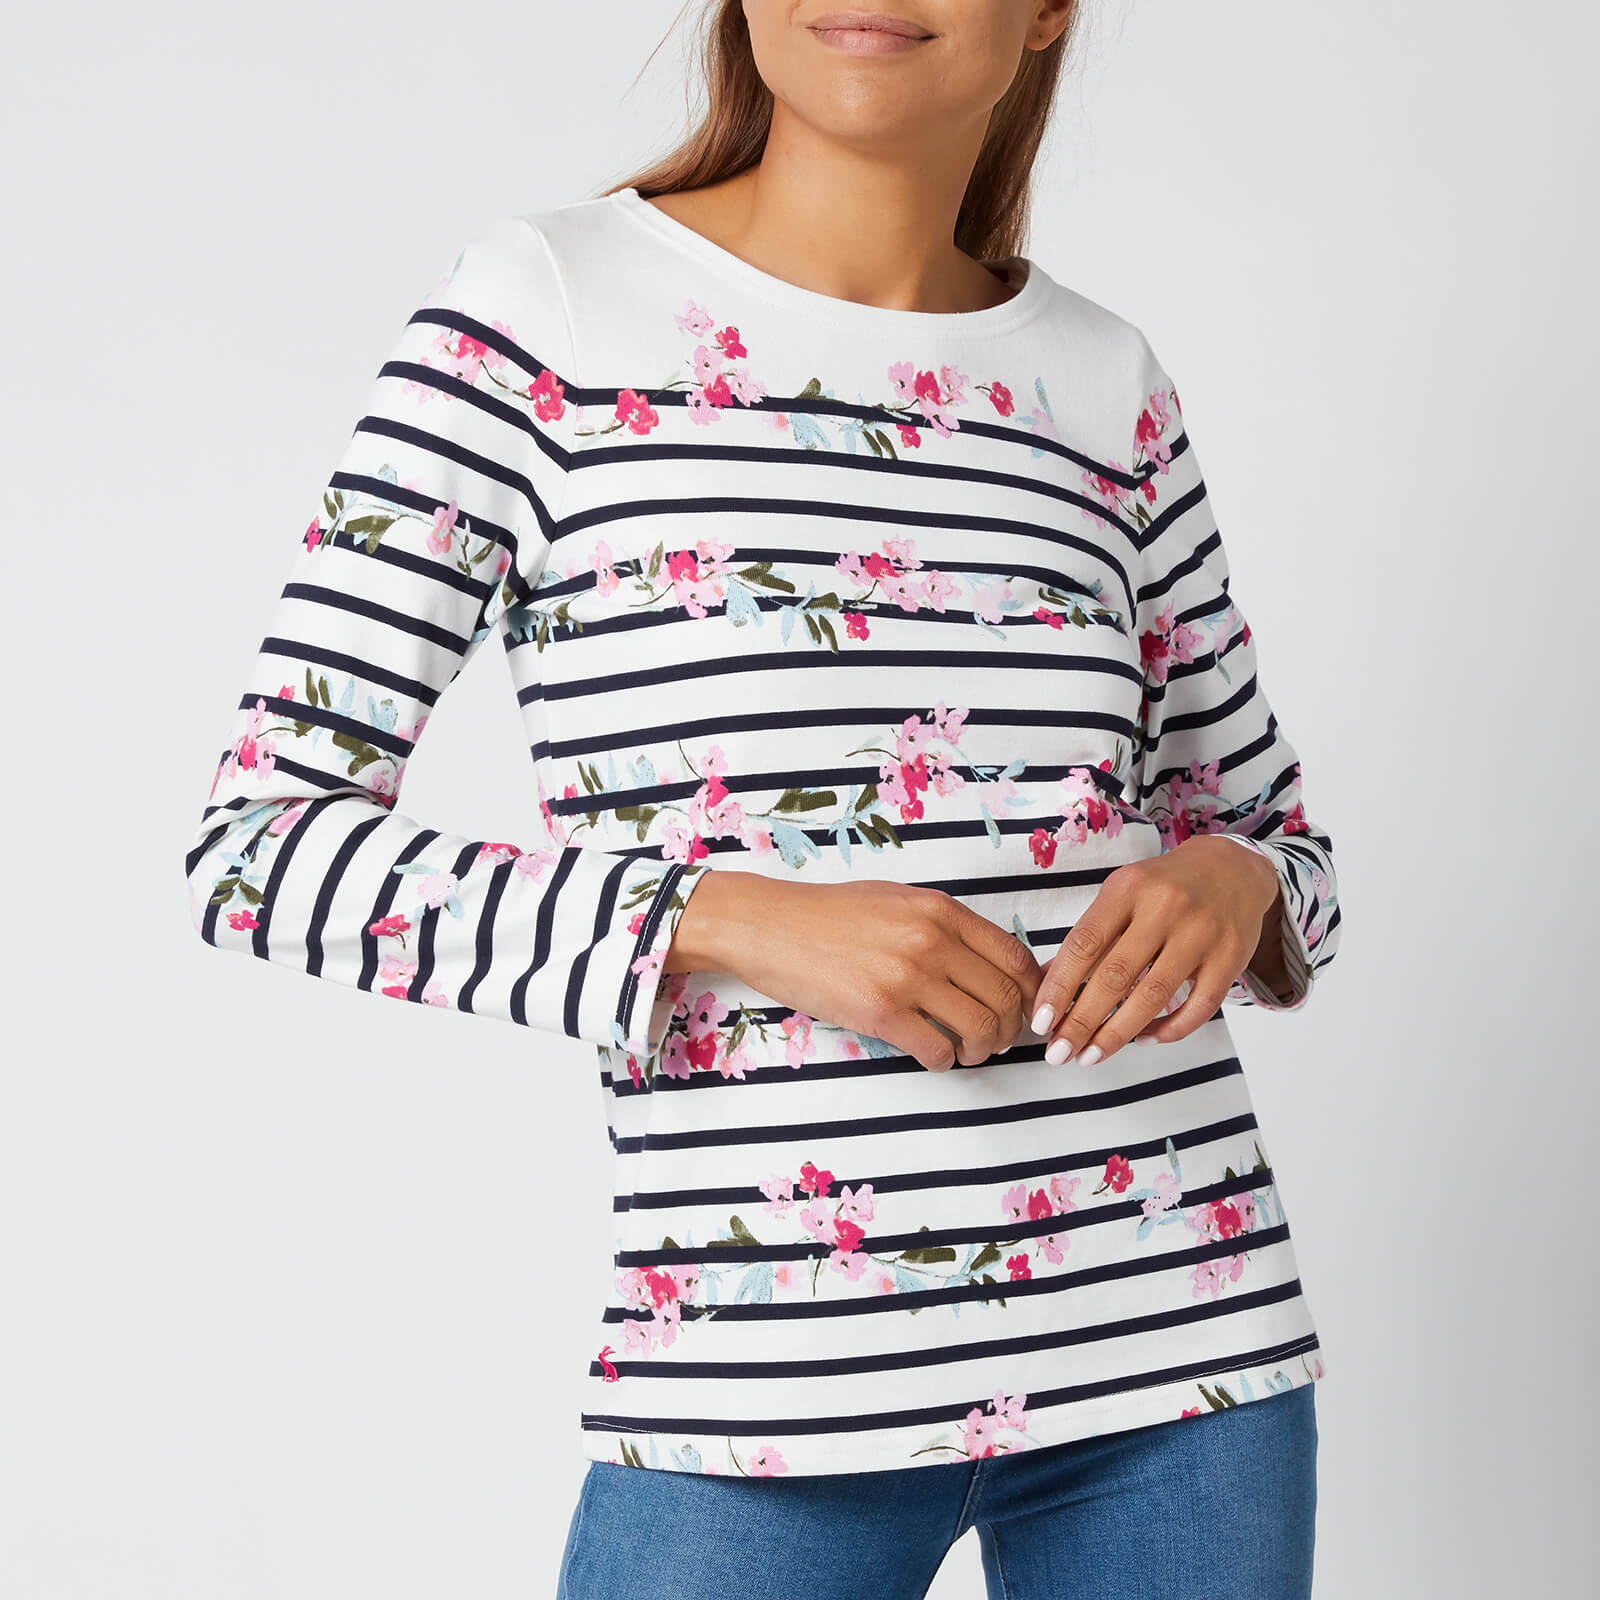 Joules Women's Harbour Print Long Sleeve Top - Créme Floral Stripe - UK 6